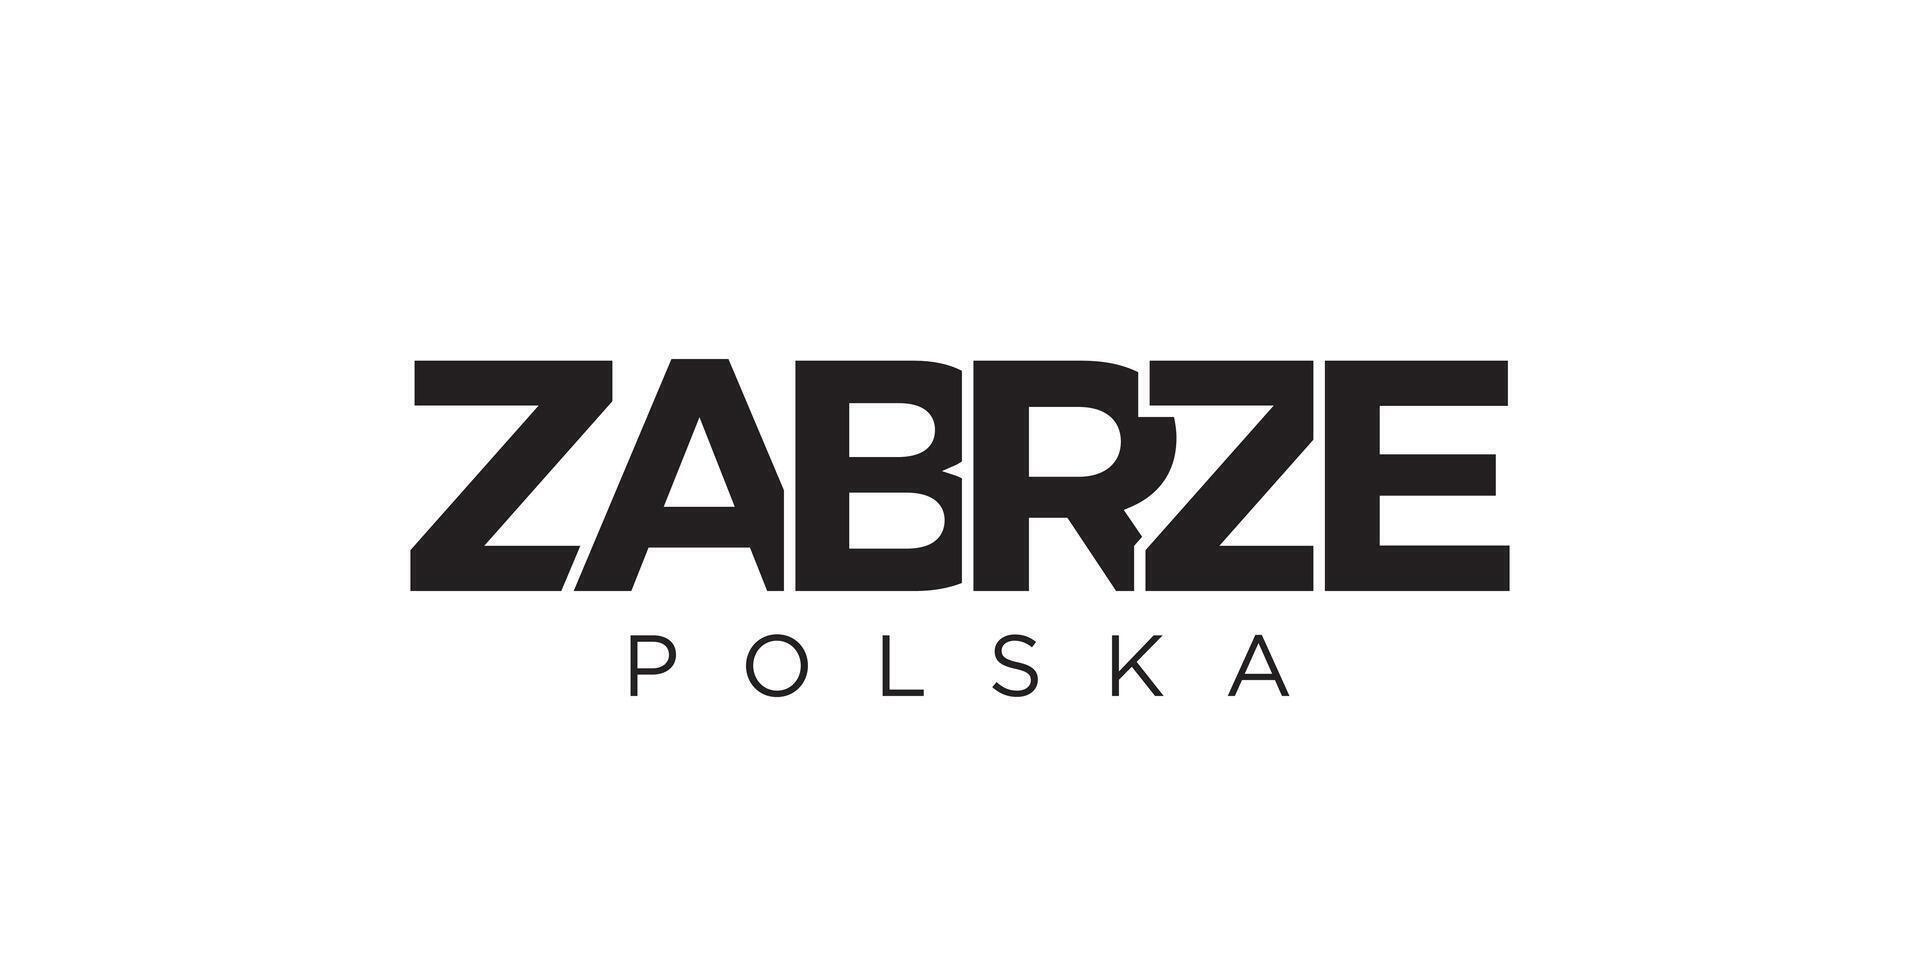 zabrze en el Polonia emblema. el diseño caracteristicas un geométrico estilo, vector ilustración con negrita tipografía en un moderno fuente. el gráfico eslogan letras.